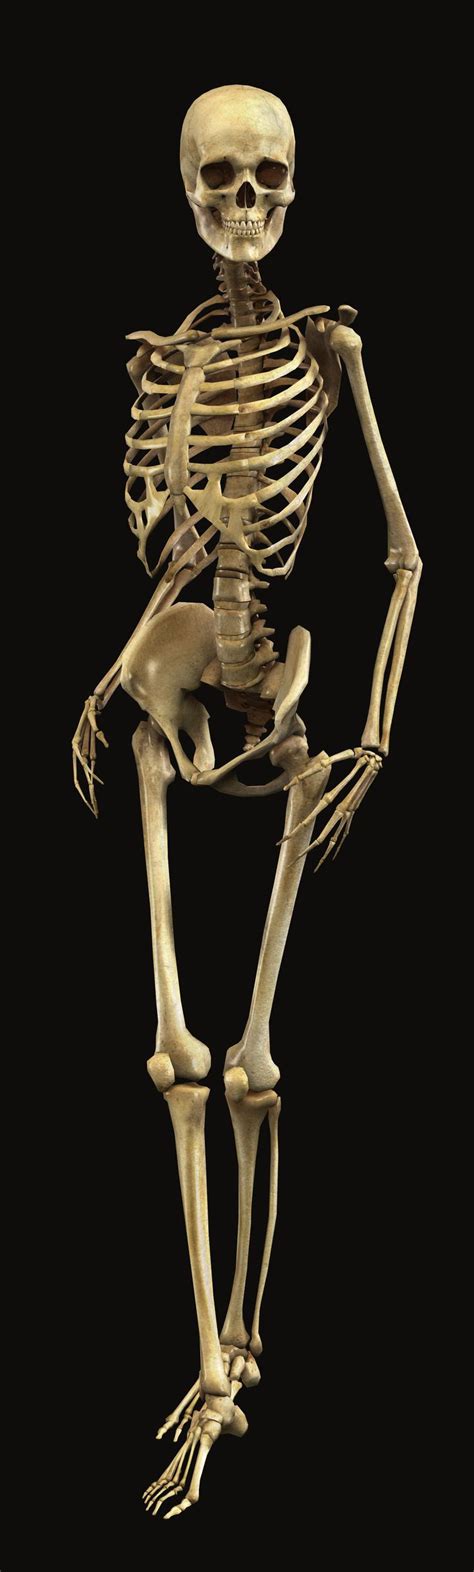 Random Fact Week 12 Skeleton Anatomy Human Skeleton Skeleton Drawings